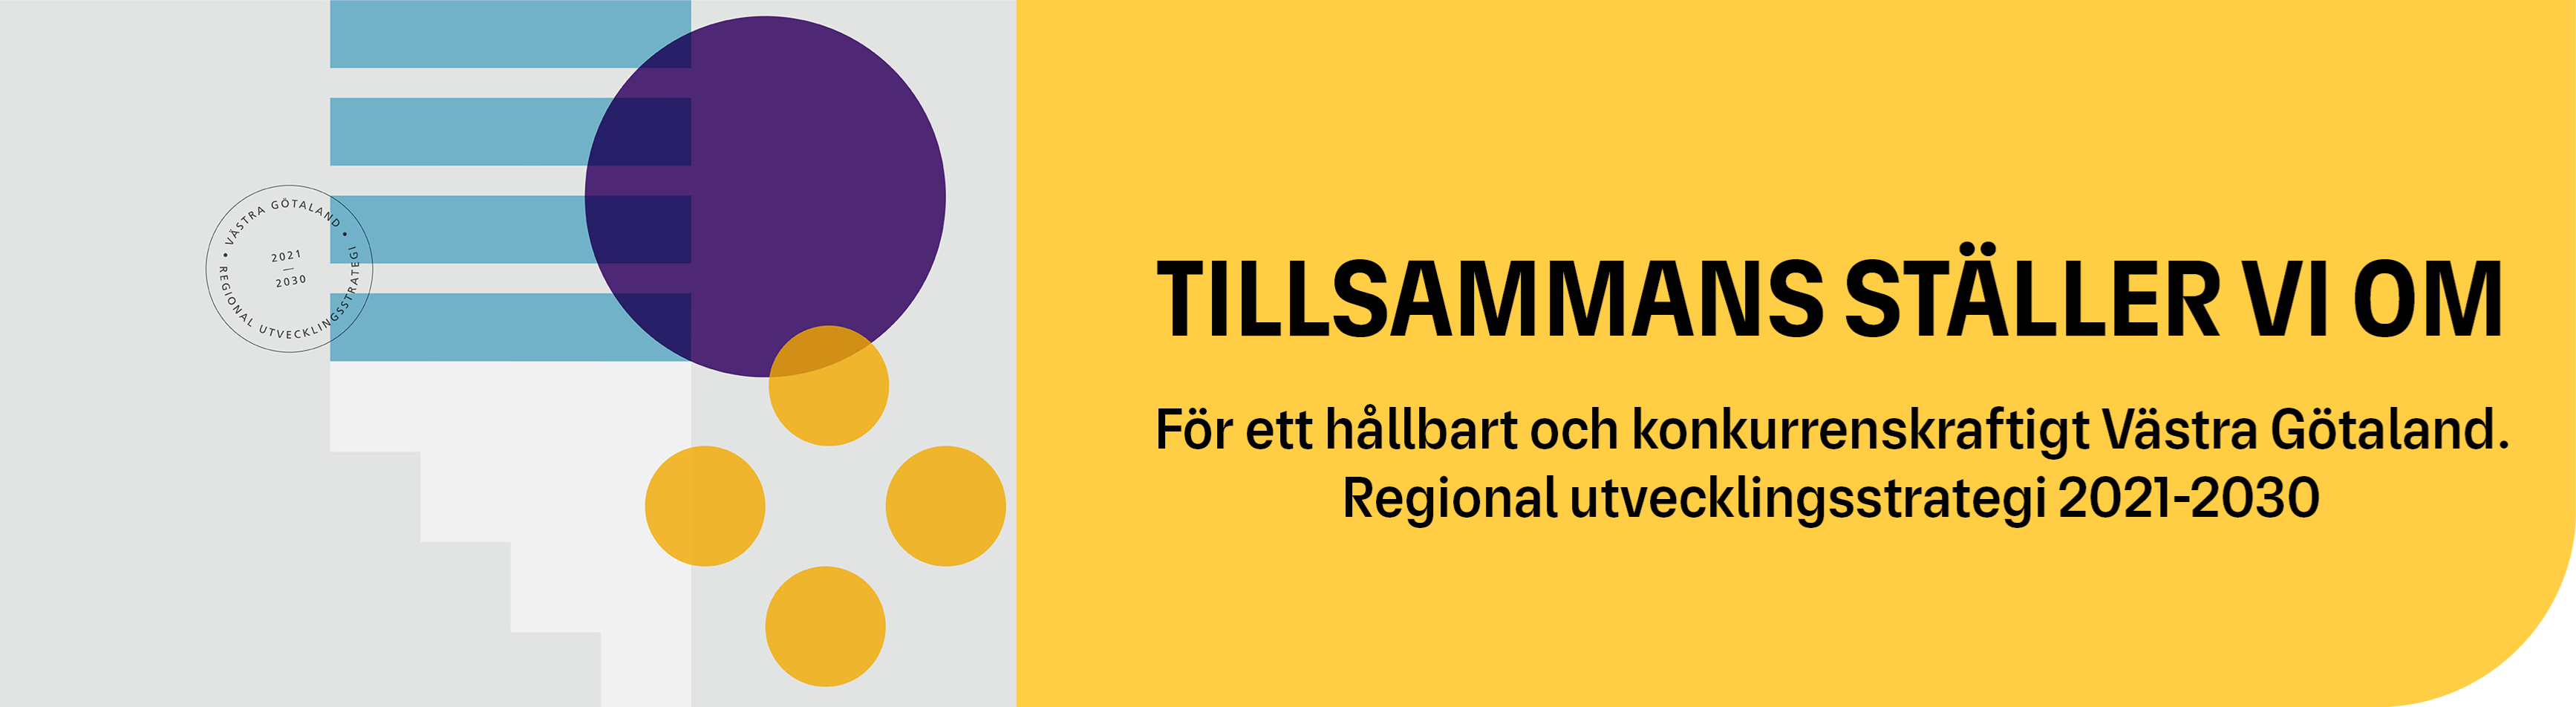 Tillsammans ställer vi om. För ett hållbart och konkurrenskraftigt Västra Götaland. Regional utvecklingsstrategi 2021-2030